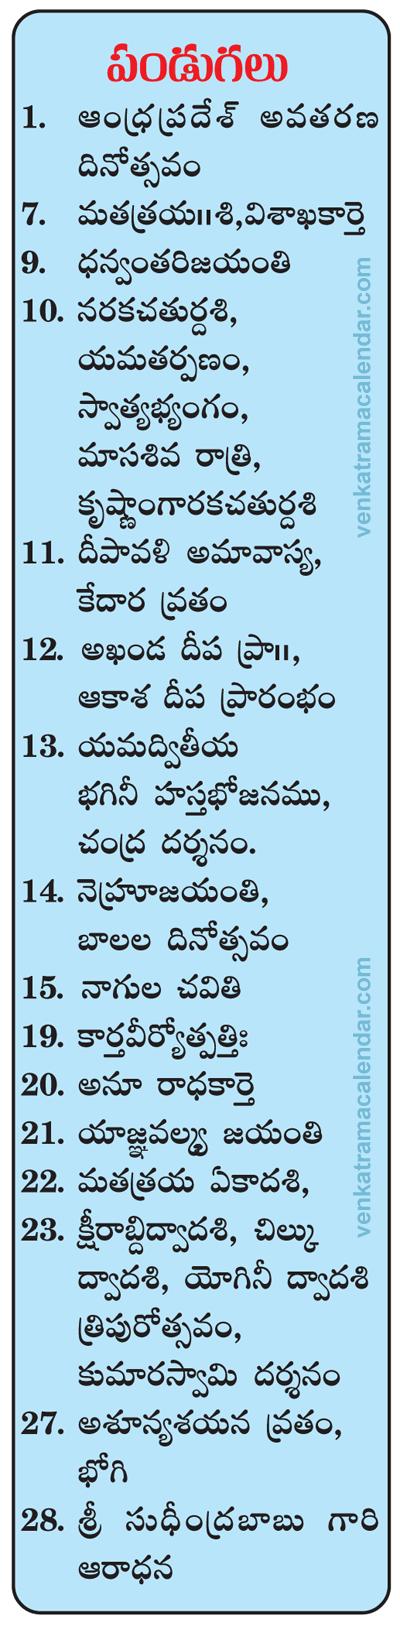 2015-Telugu-Festivals-November